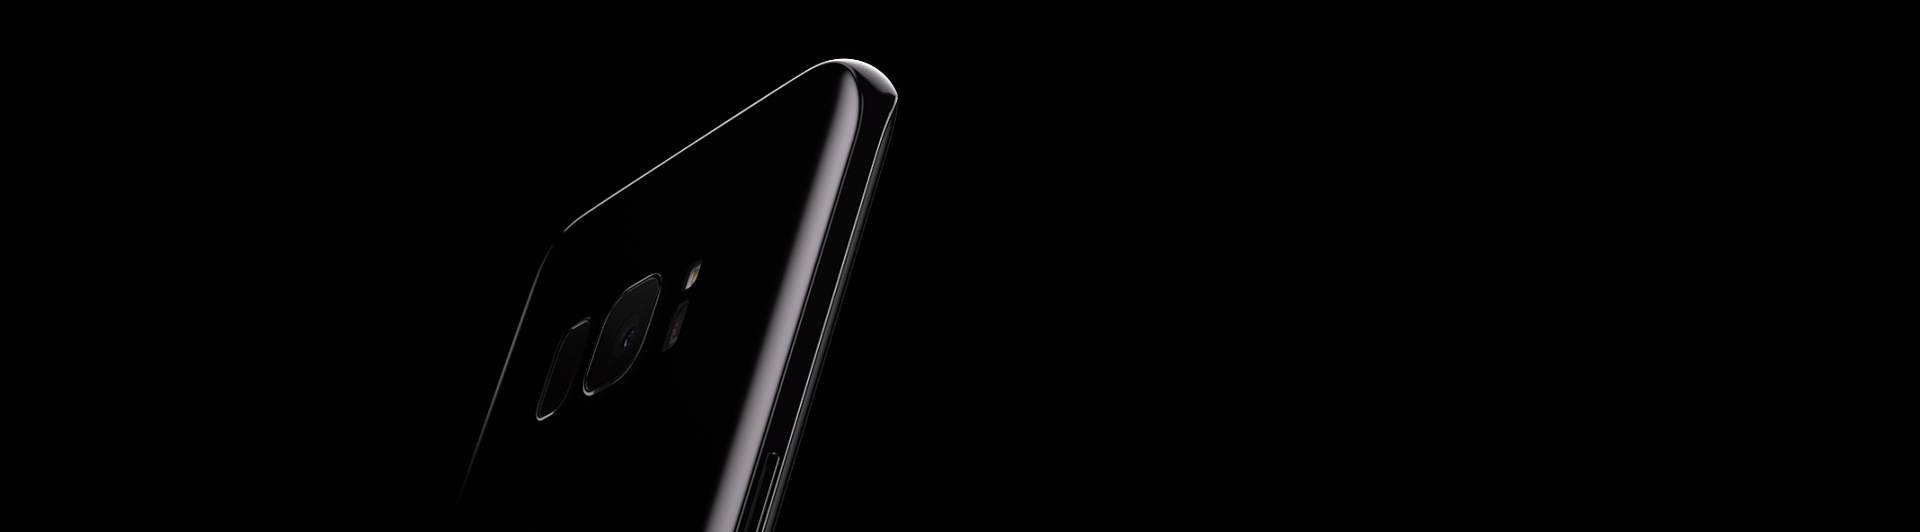 Điện thoại Samsung Galaxy S8 đen thiết kế đẹp mắt